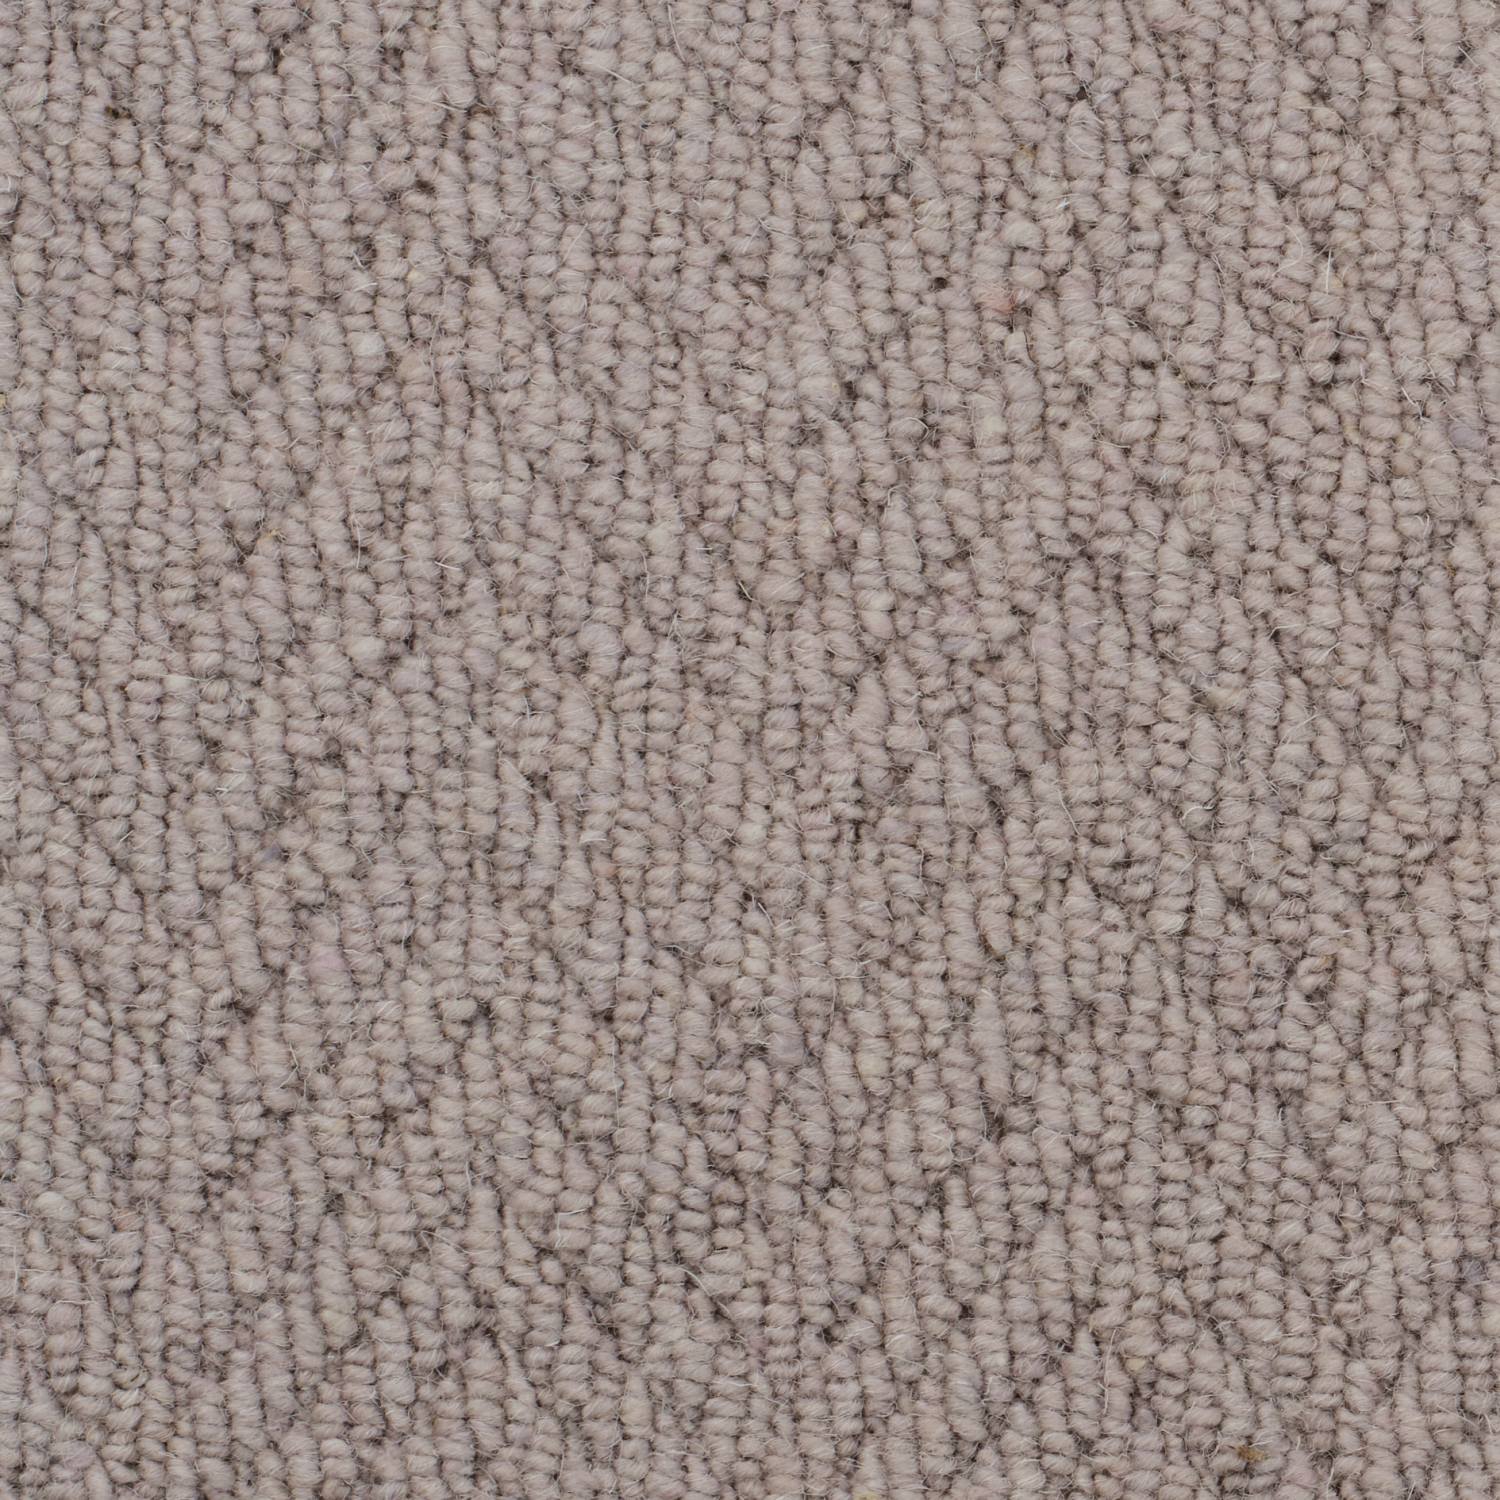 Natural Origins Loop Wool Carpet - Tawny Herringbone